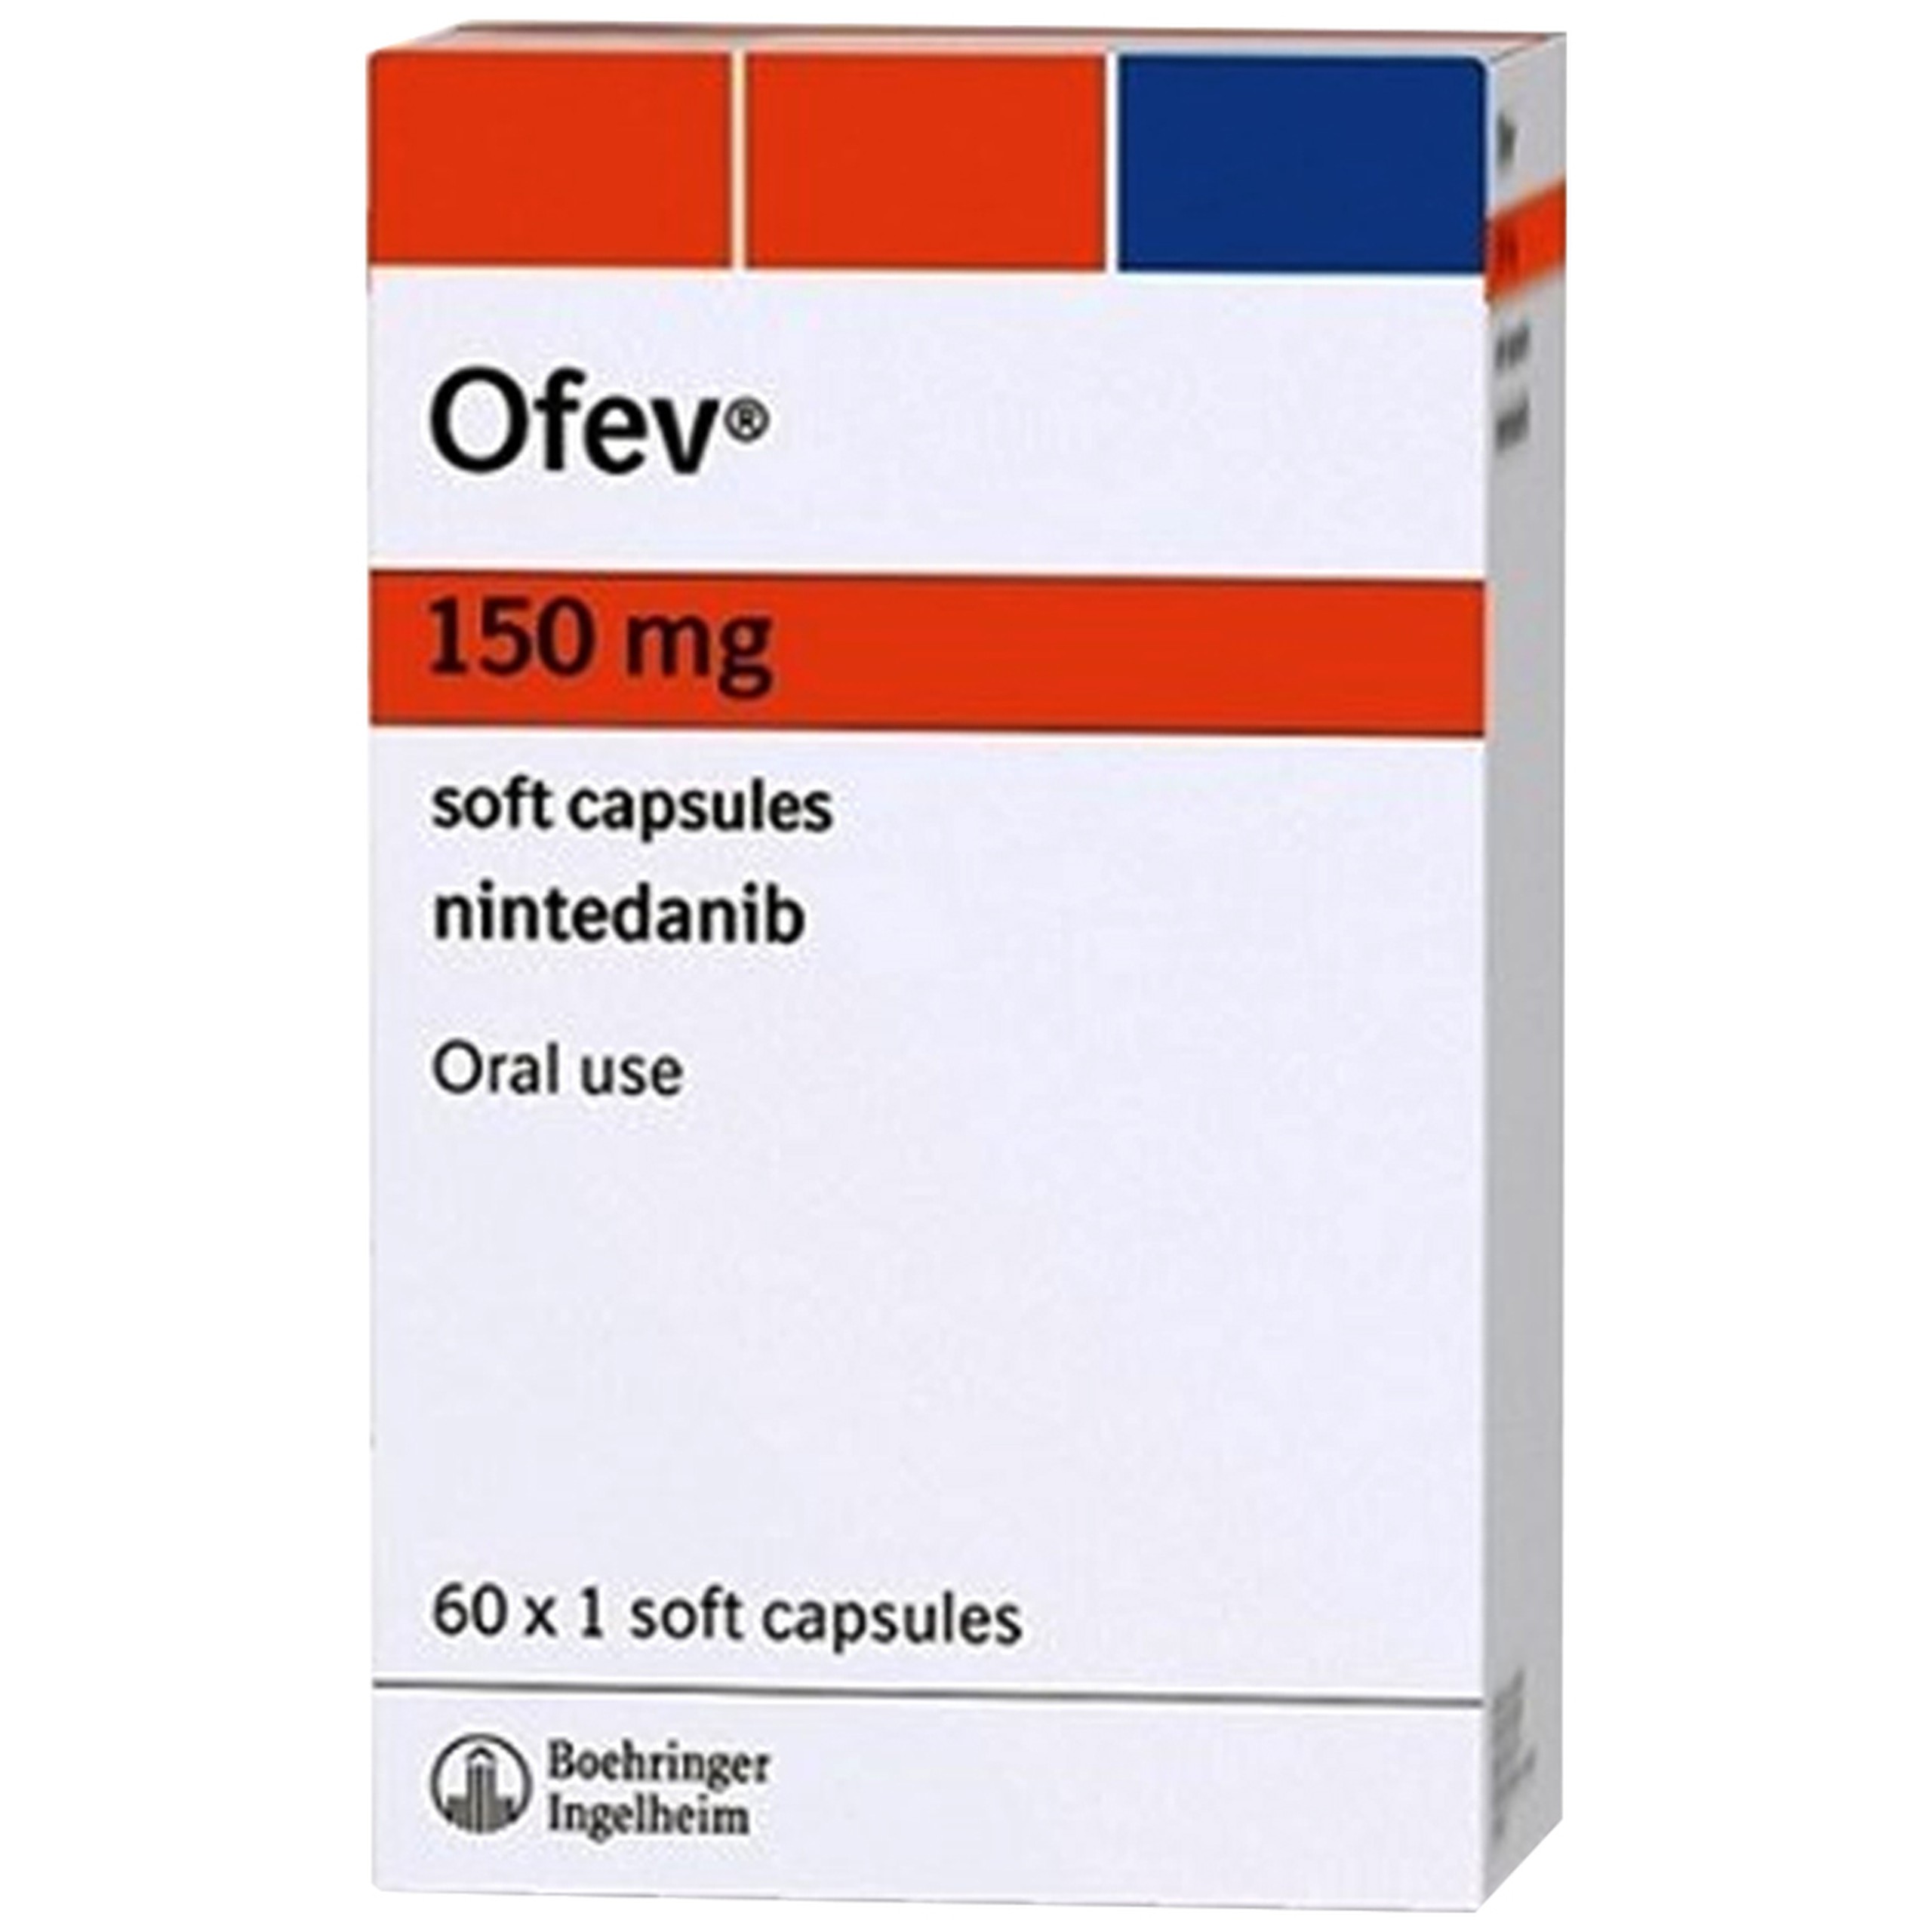 Thuốc Ofev 150mg Boehringer điều trị bệnh nhân ung thư phổi không tế bào nhỏ, xơ hóa phổi tự phát (6 vỉ x 10 viên)